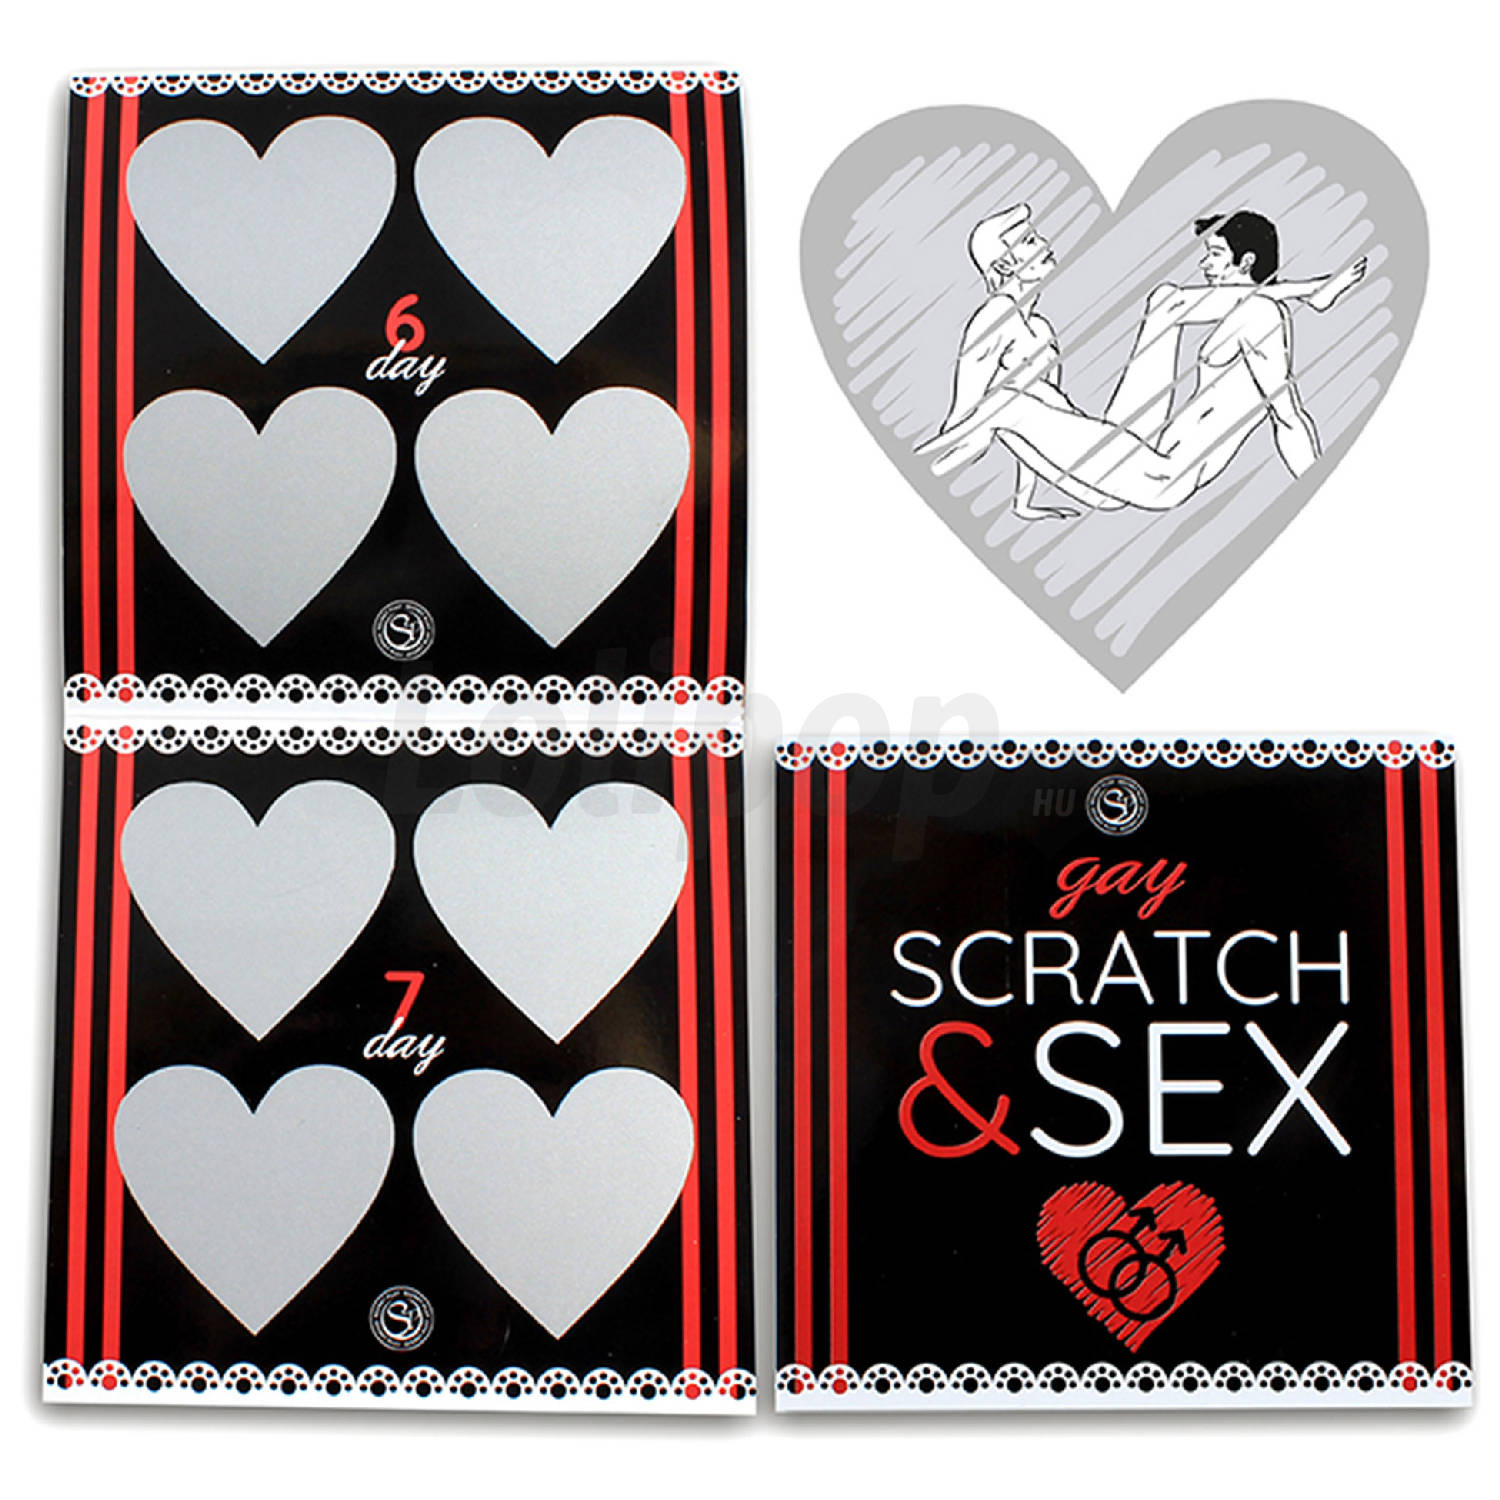 Scratch and Sex Gay játék két férfinak